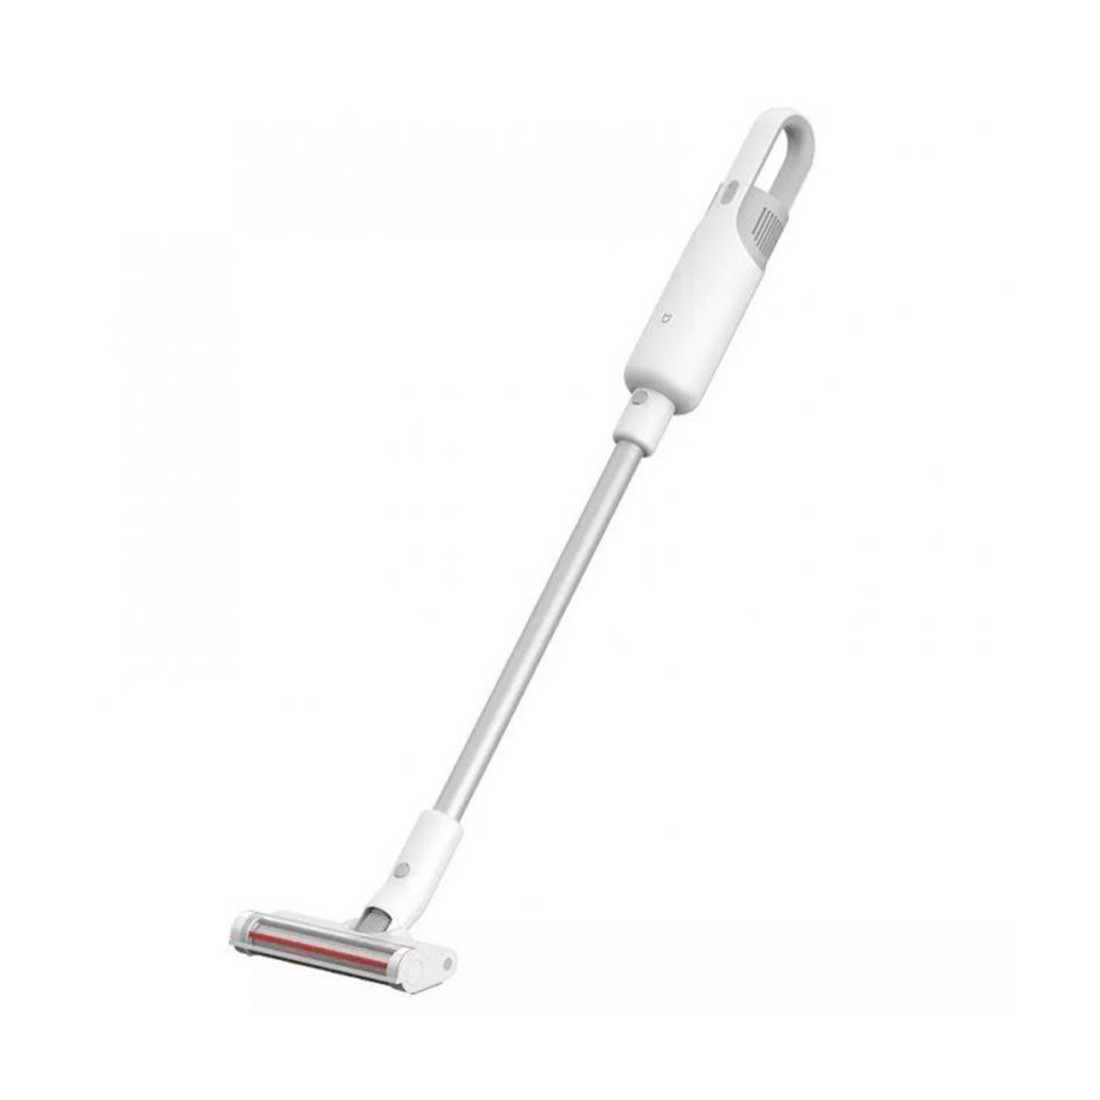 Беспроводной вертикальный пылесос Xiaomi Mi Handheld Vacuum Cleaner Light Белый 2-000598 MJWXCQ03DY